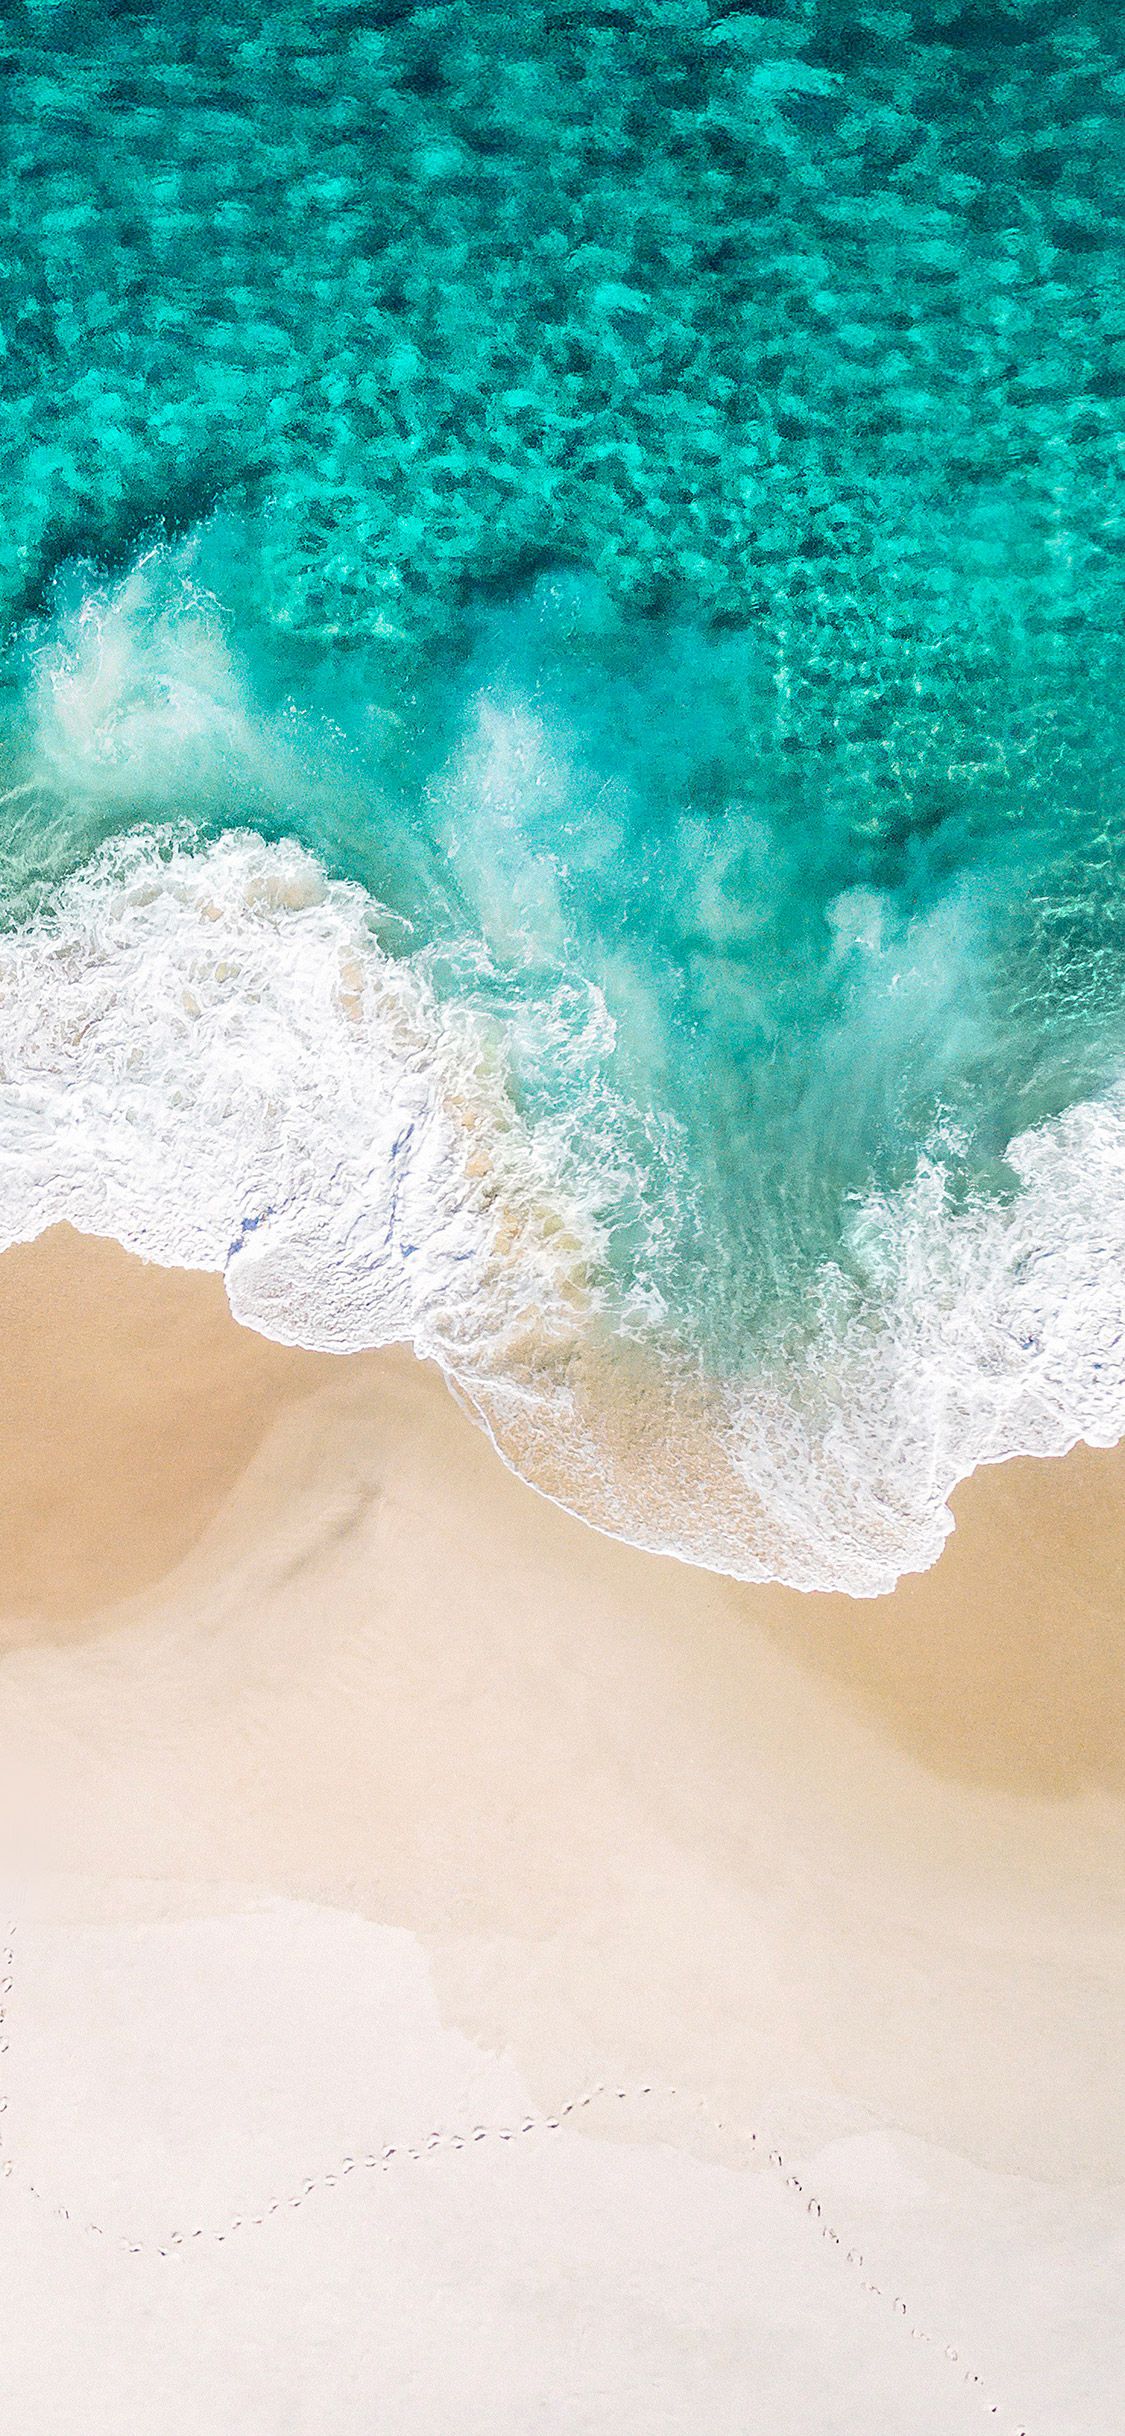 Với hình nền sóng biển xanh, bạn sẽ được trải nghiệm những khoảnh khắc yên bình, thư giãn và thăng hoa. Điều này sẽ giúp thư giãn và đặt lại tâm trạng của bạn ở mức tốt nhất.